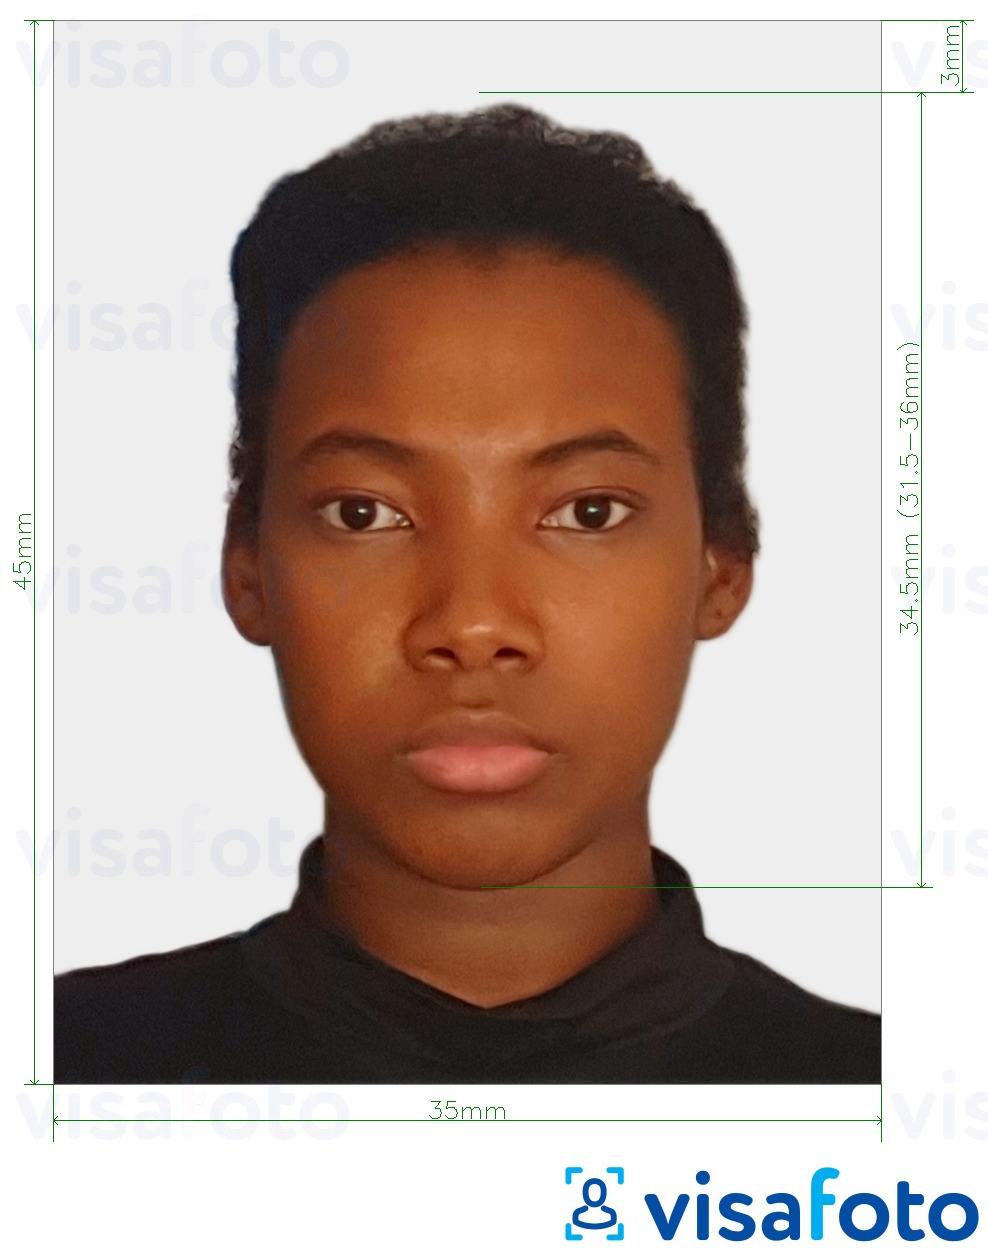 Przykład zdjęcia dla Wiza Cote d'Ivoire 4,5 x 3,5 cm (45 x 35 mm) z podaniem dokładnego rozmiaru.